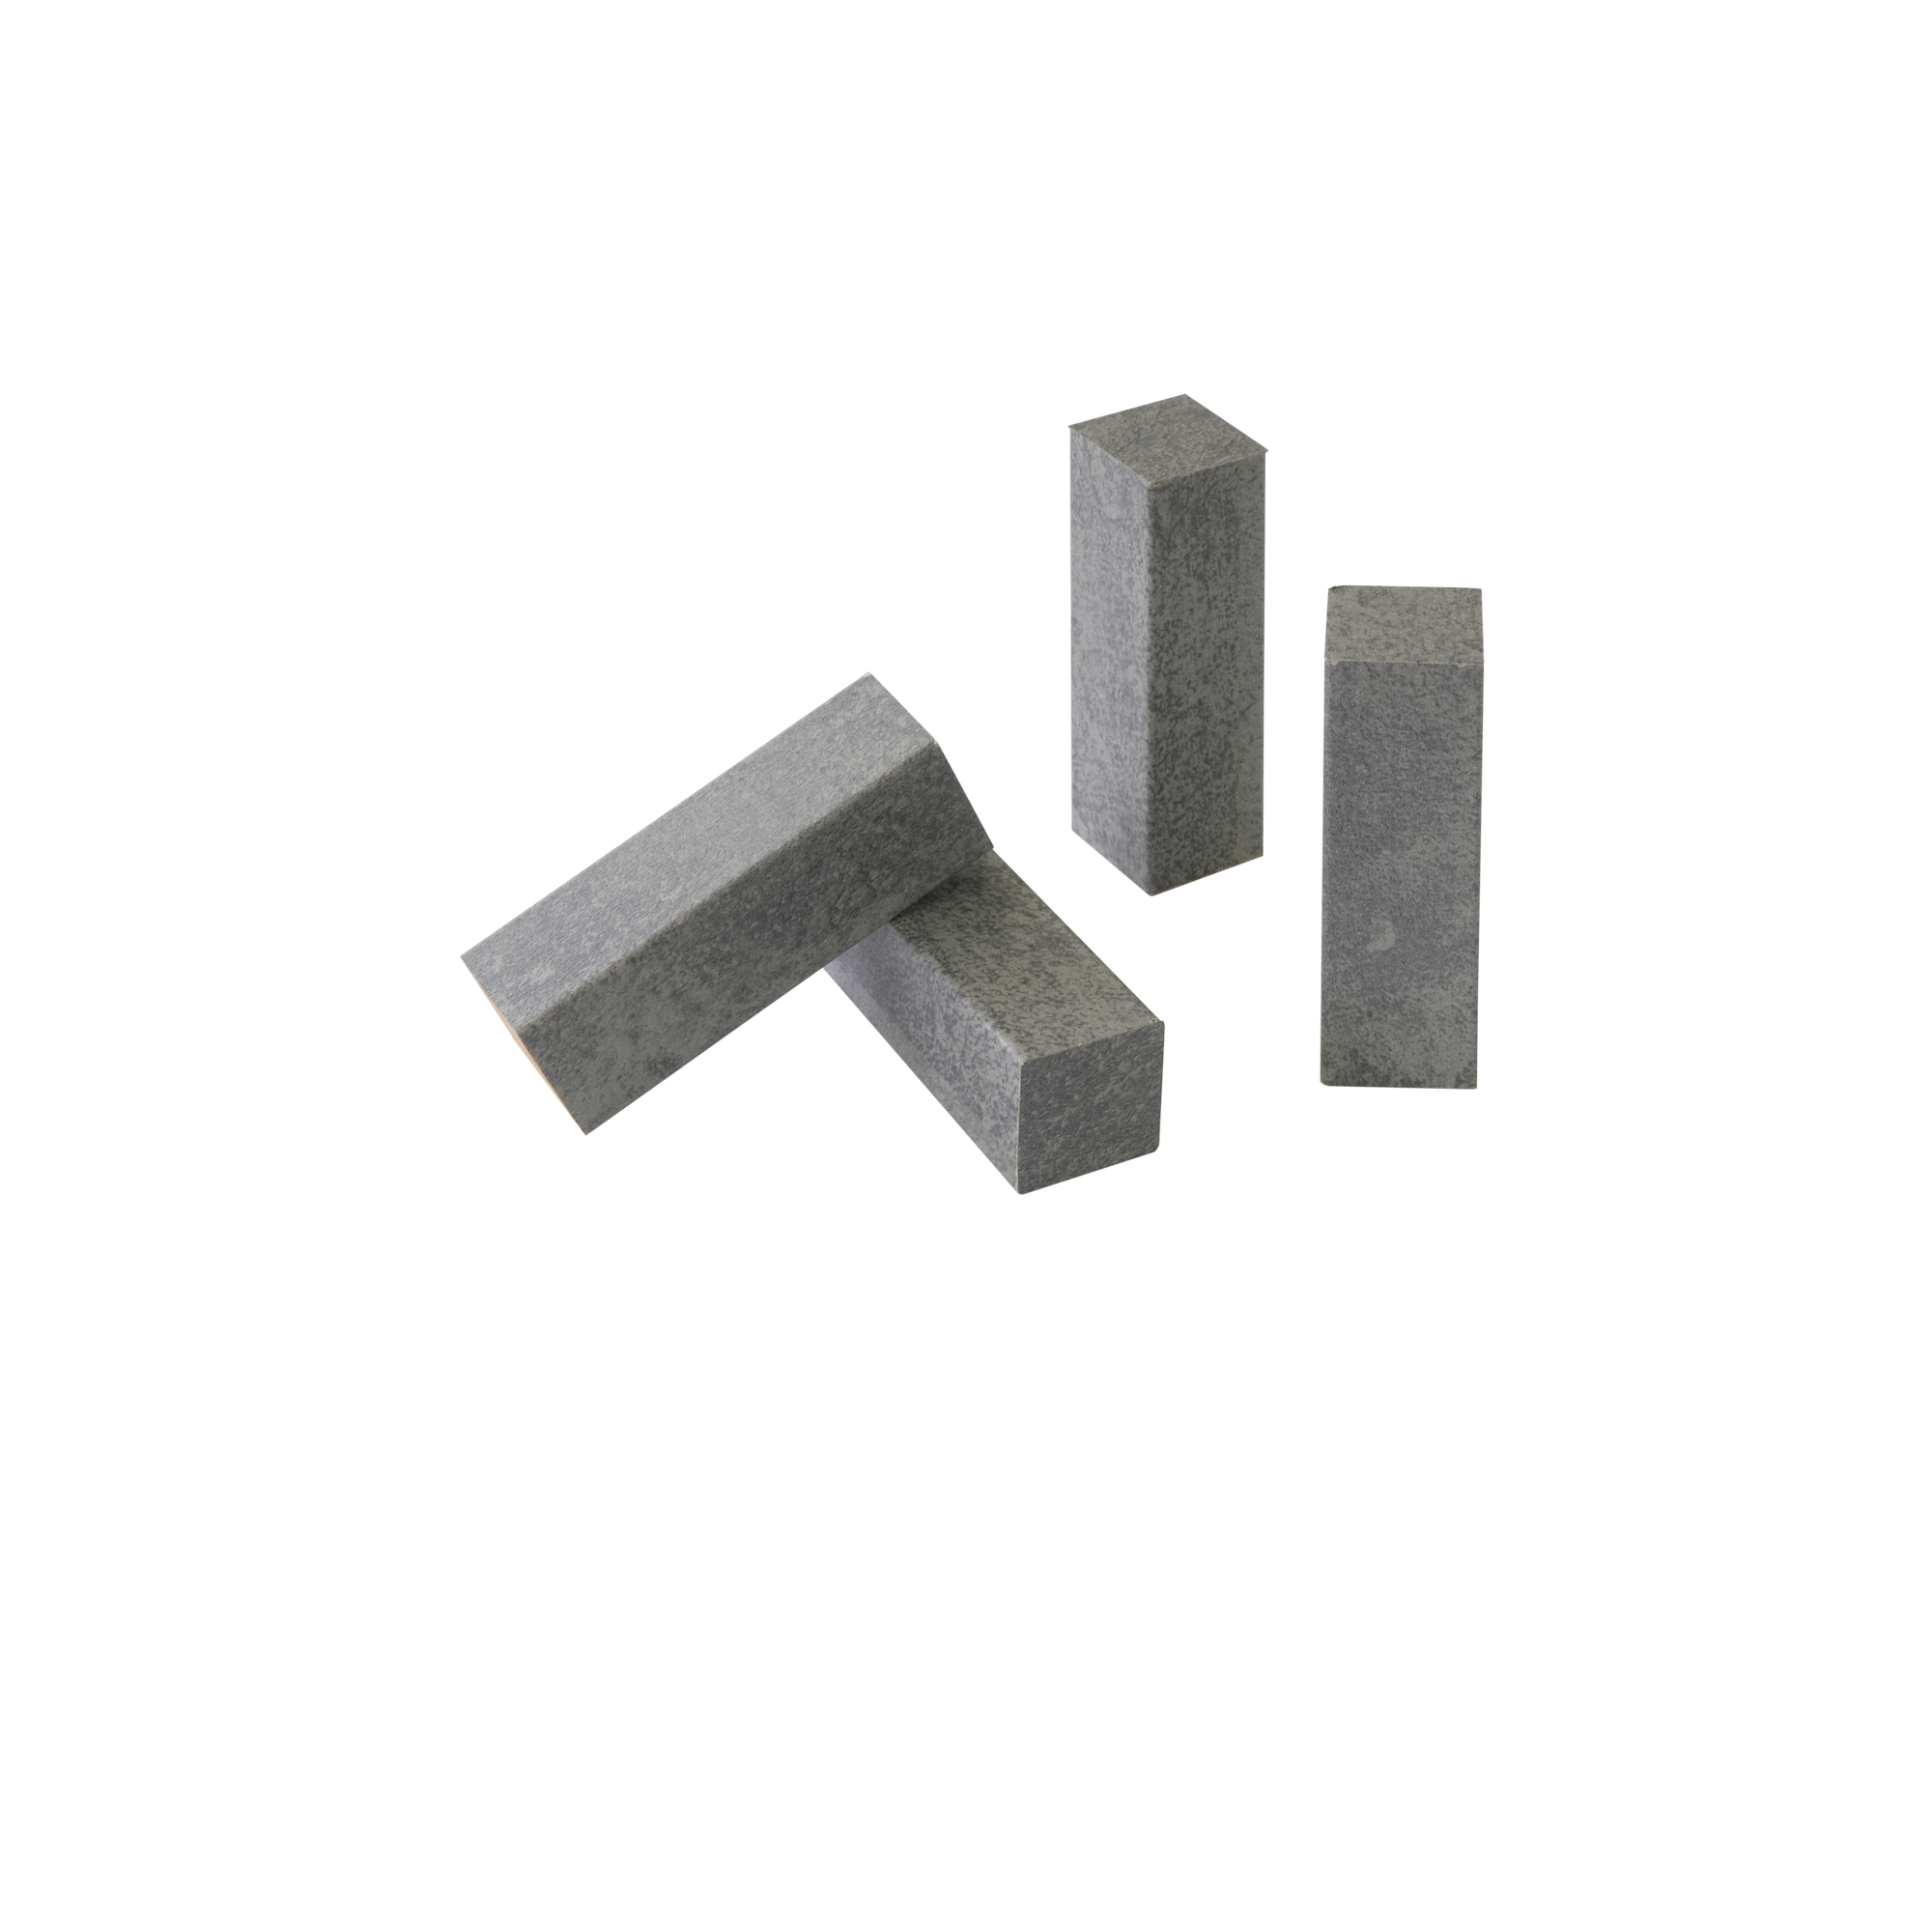 Eckholz Zement grau 19 x 19 x 60 mm, 4 Stück + product picture